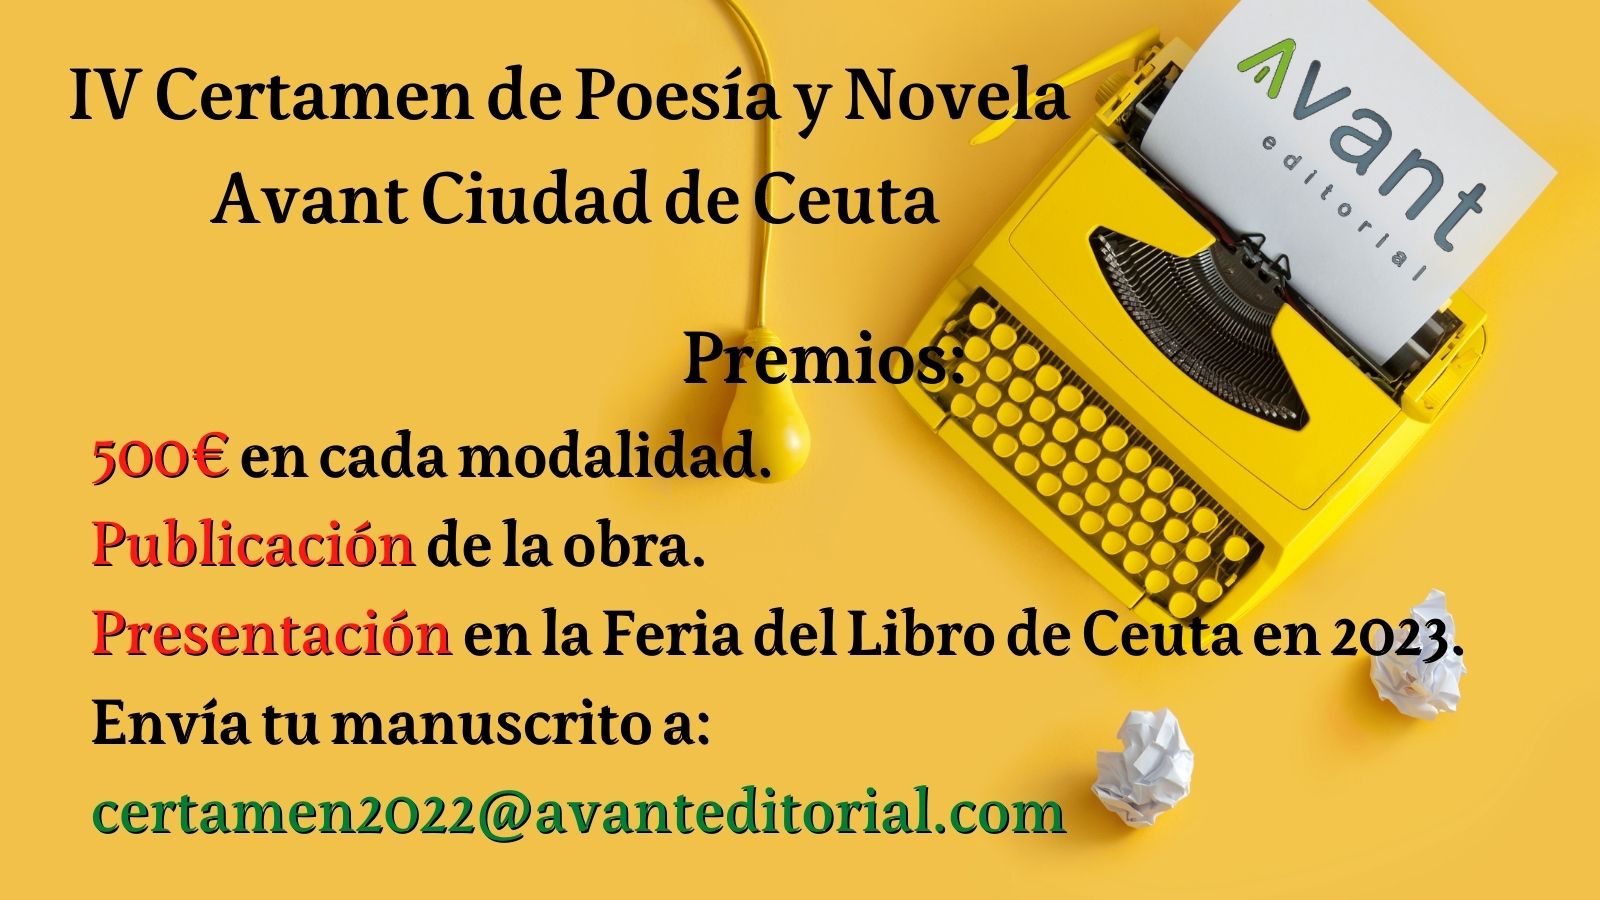 IV Certamen de Poesía y Novela Avant Ciudad de Ceuta 2022